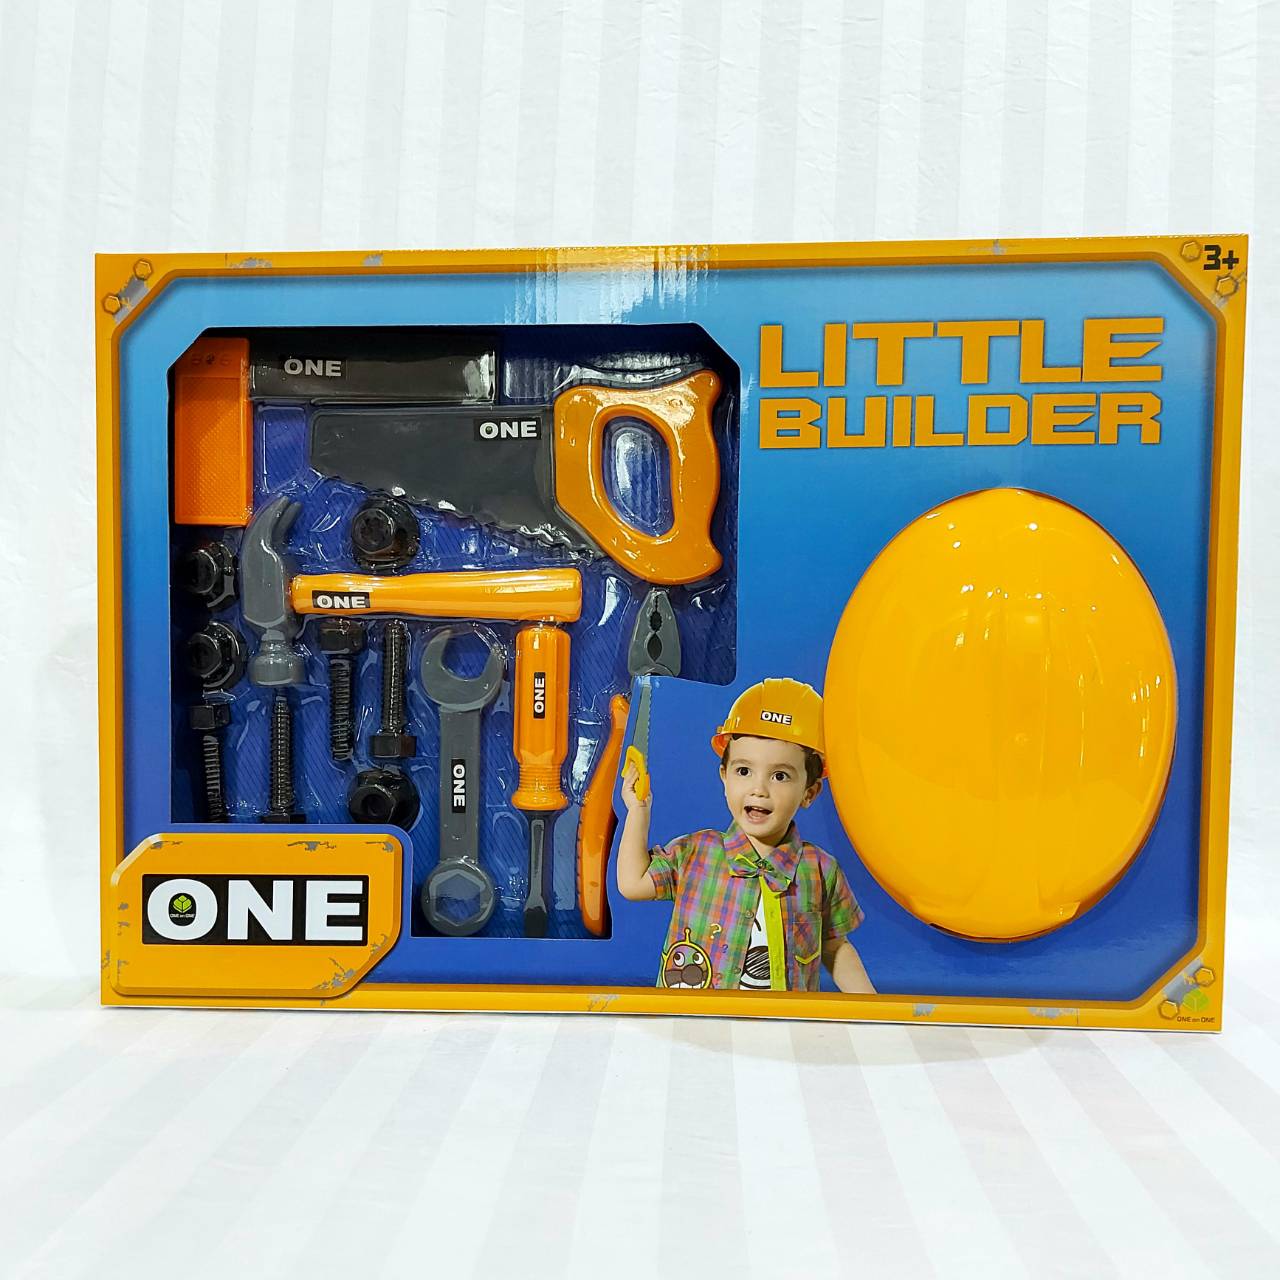 ชุดเครื่องมือช่าง พร้อมหมวก Little Builder ชุดช่างก่อสร้างของเล่น ชุดช่างก่อสร้างเด็ก ของเล่นเด็ก